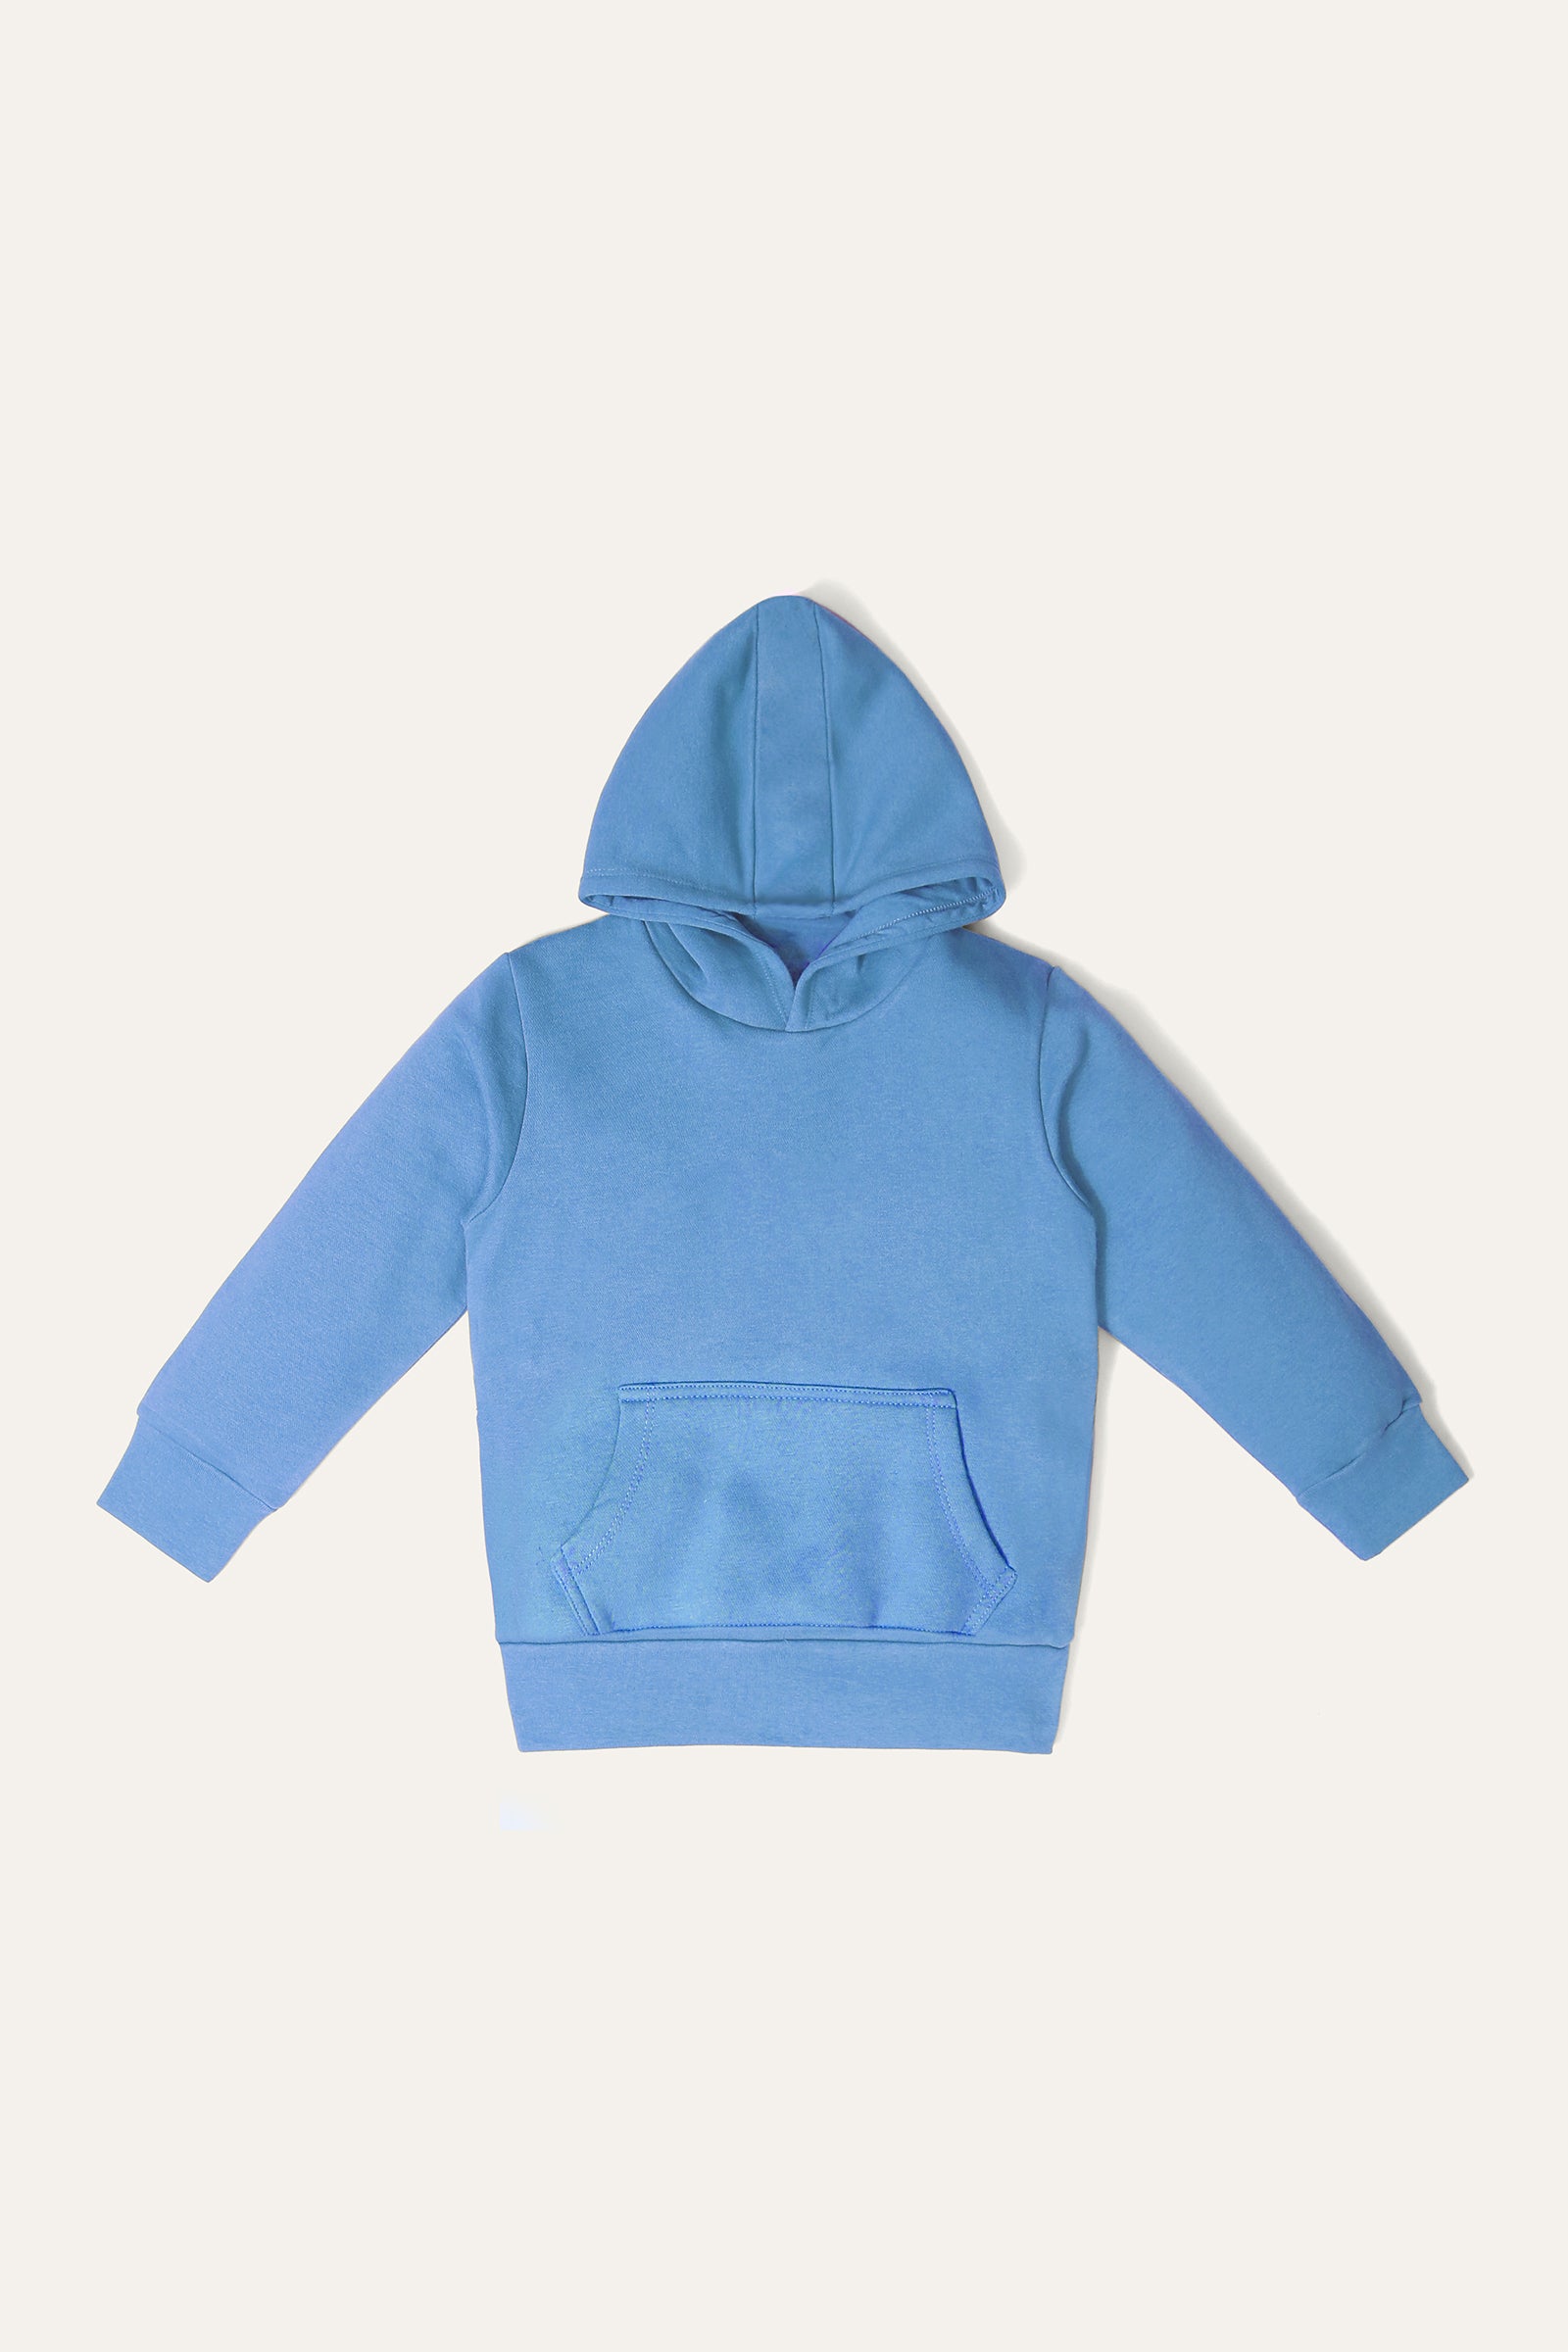 Pullover hoodie (G-HOOD-014R)